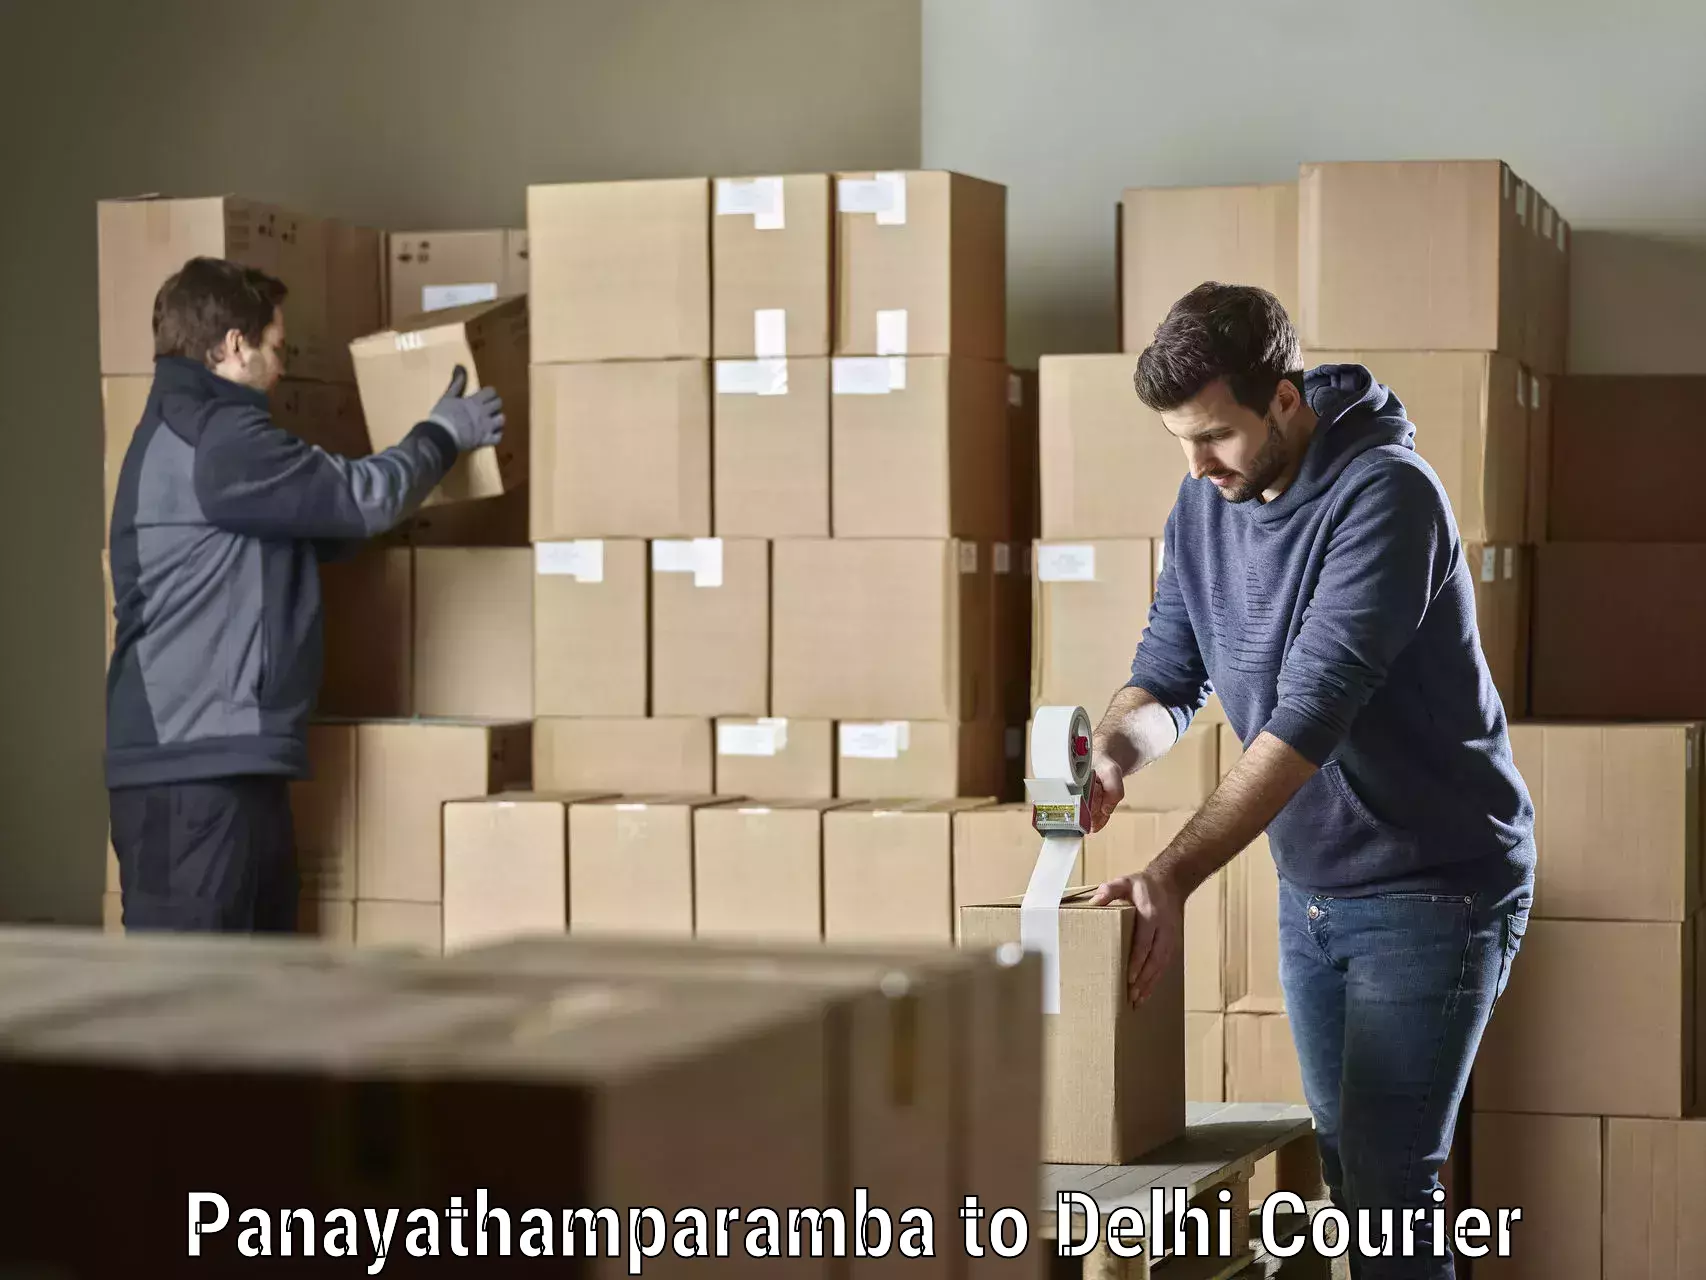 Efficient order fulfillment Panayathamparamba to Naraina Industrial Estate